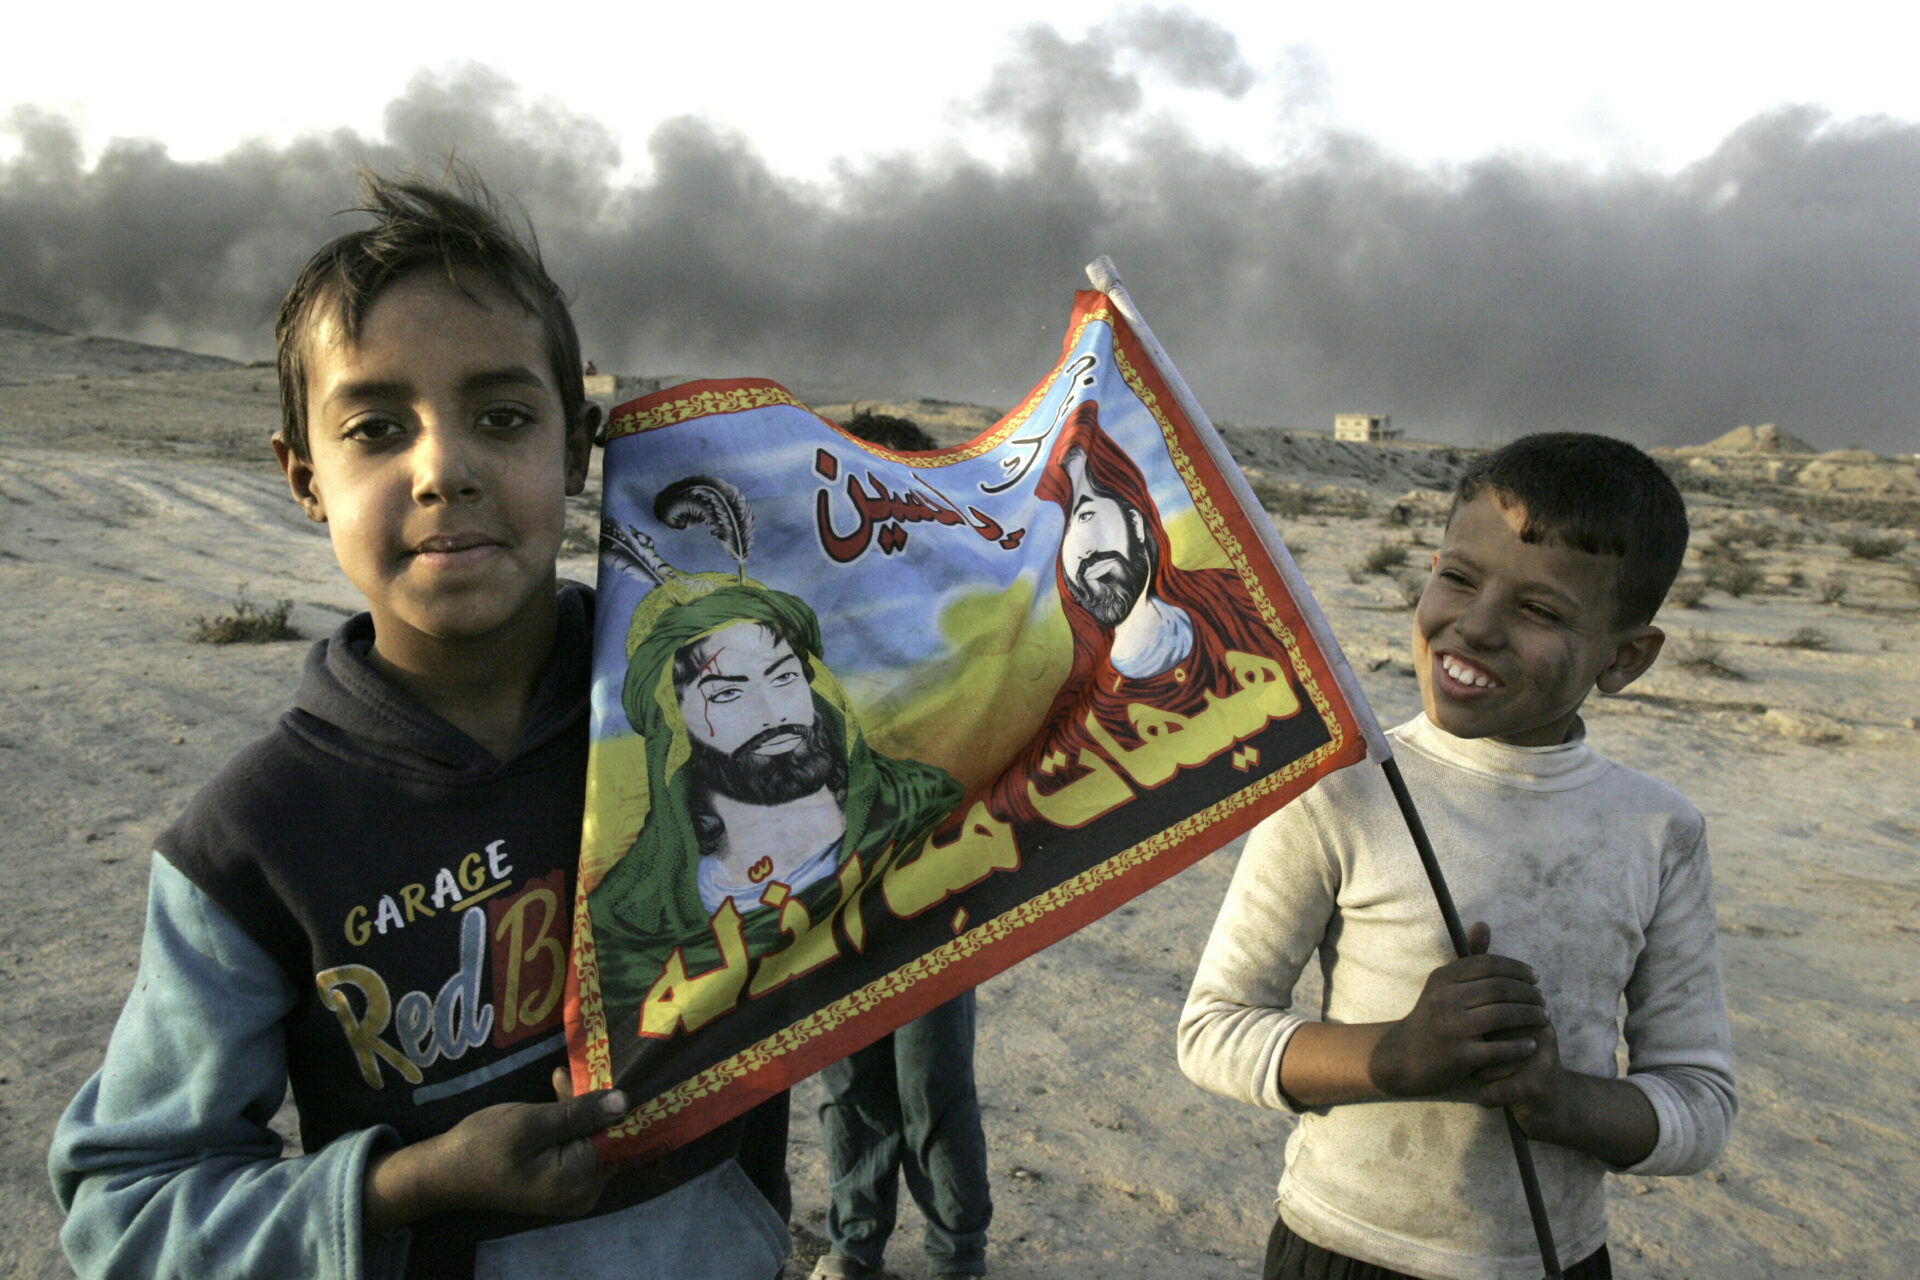 Zwei Kinder im Irak. Auf der Fahne sind die Imame Hussein und Ali zu sehen – Verwandte des Propheten Mohammed. Sie werden von den Schiiten als Kriegshelden und Märtyrer verehrt.